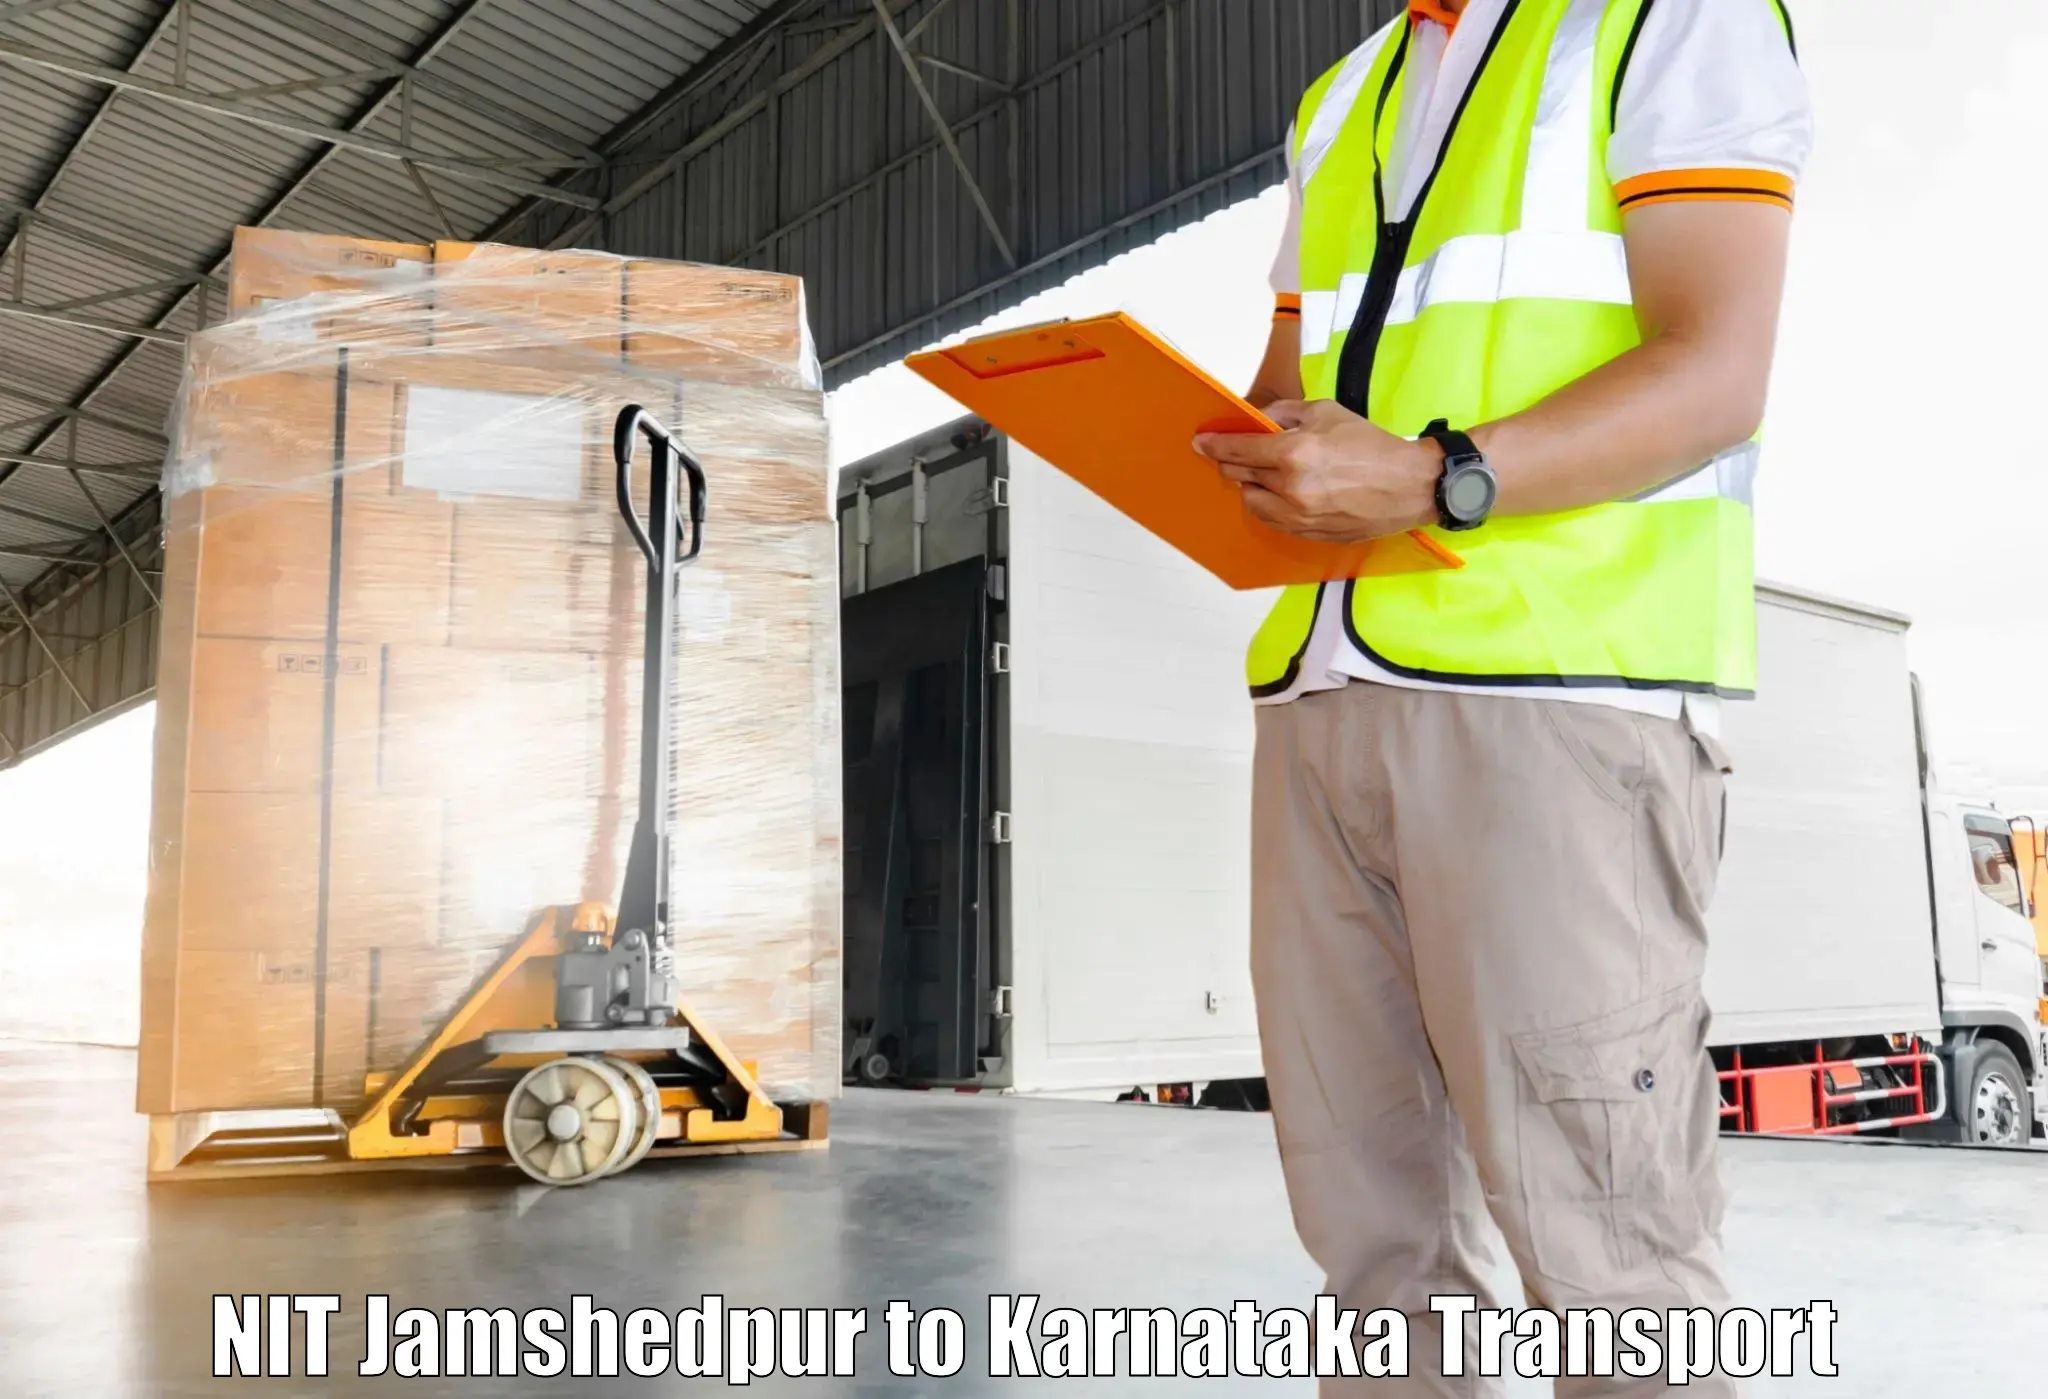 Furniture transport service NIT Jamshedpur to Hulsoor